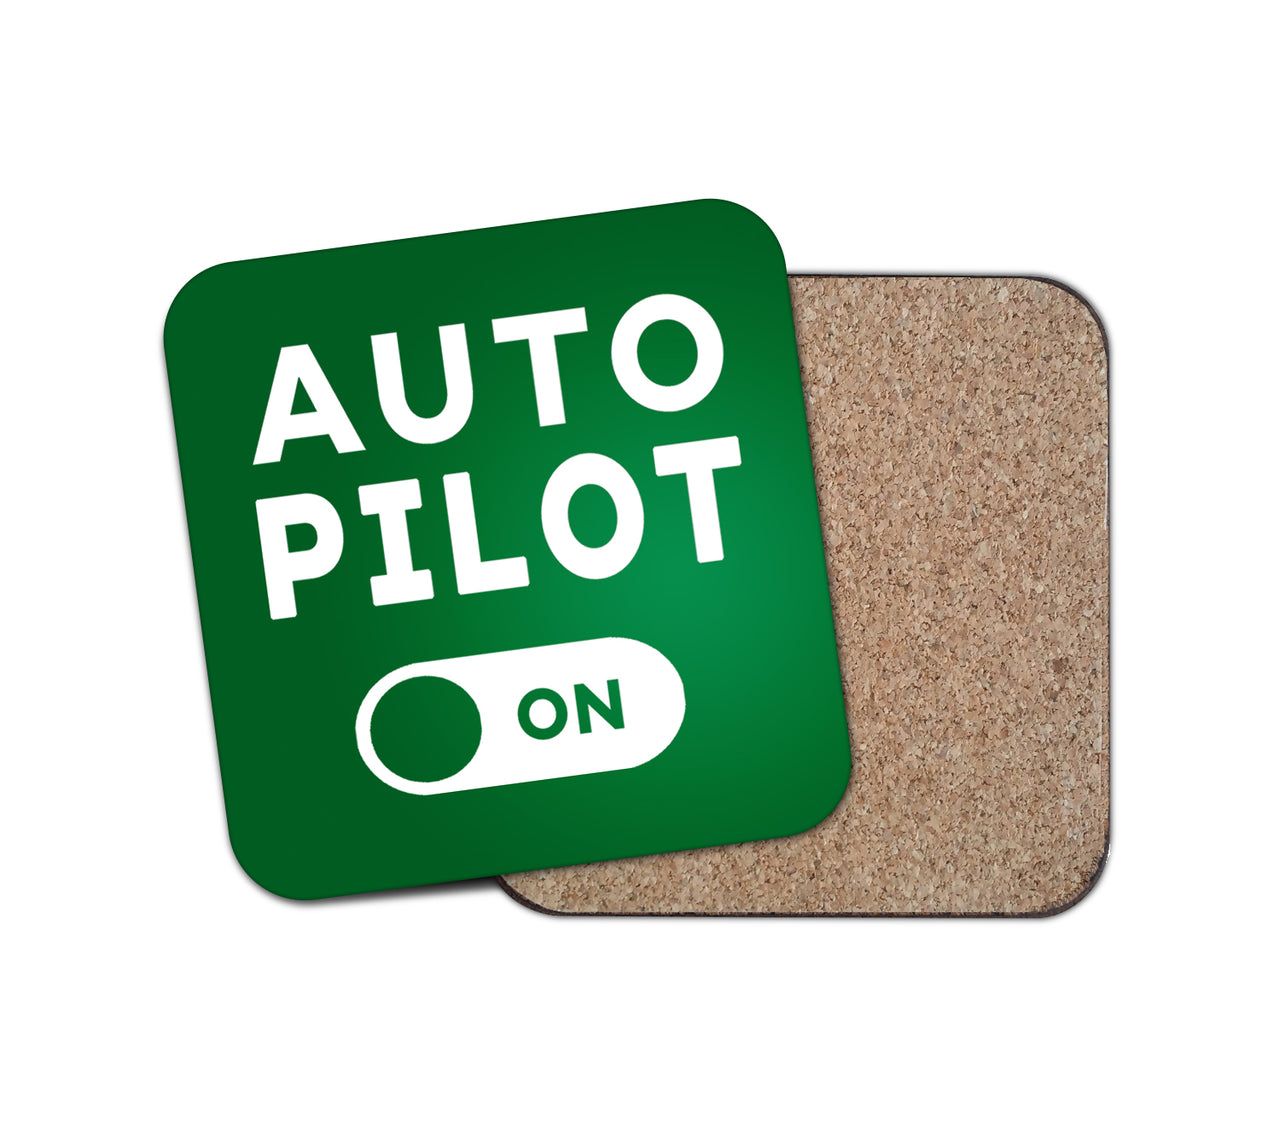 Auto Pilot ON Designed Coasters